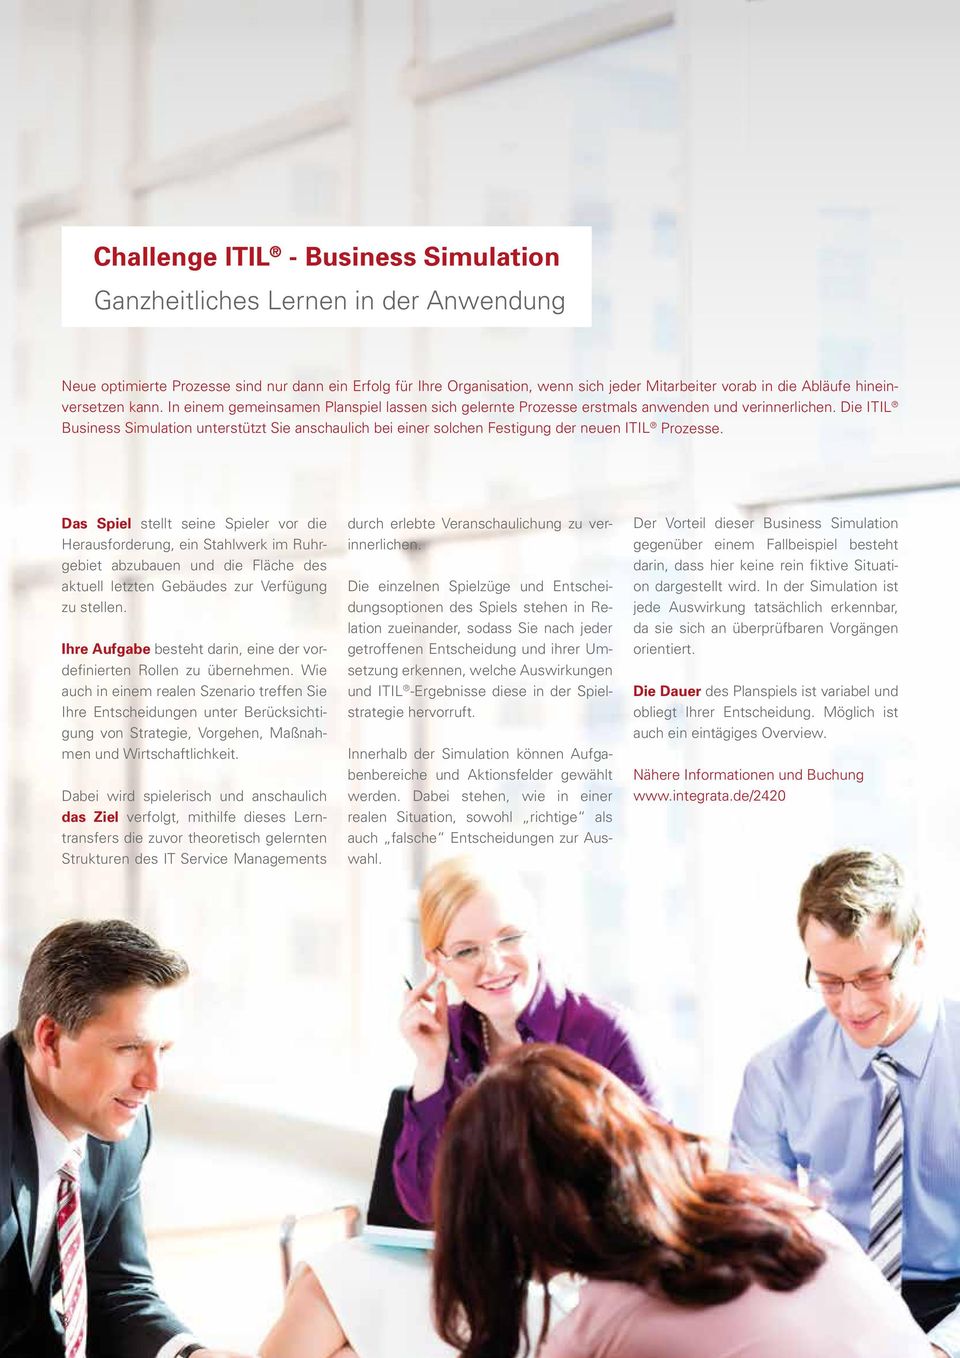 Die ITIL Business Simulation unterstützt Sie anschaulich bei einer solchen Festigung der neuen ITIL Prozesse.